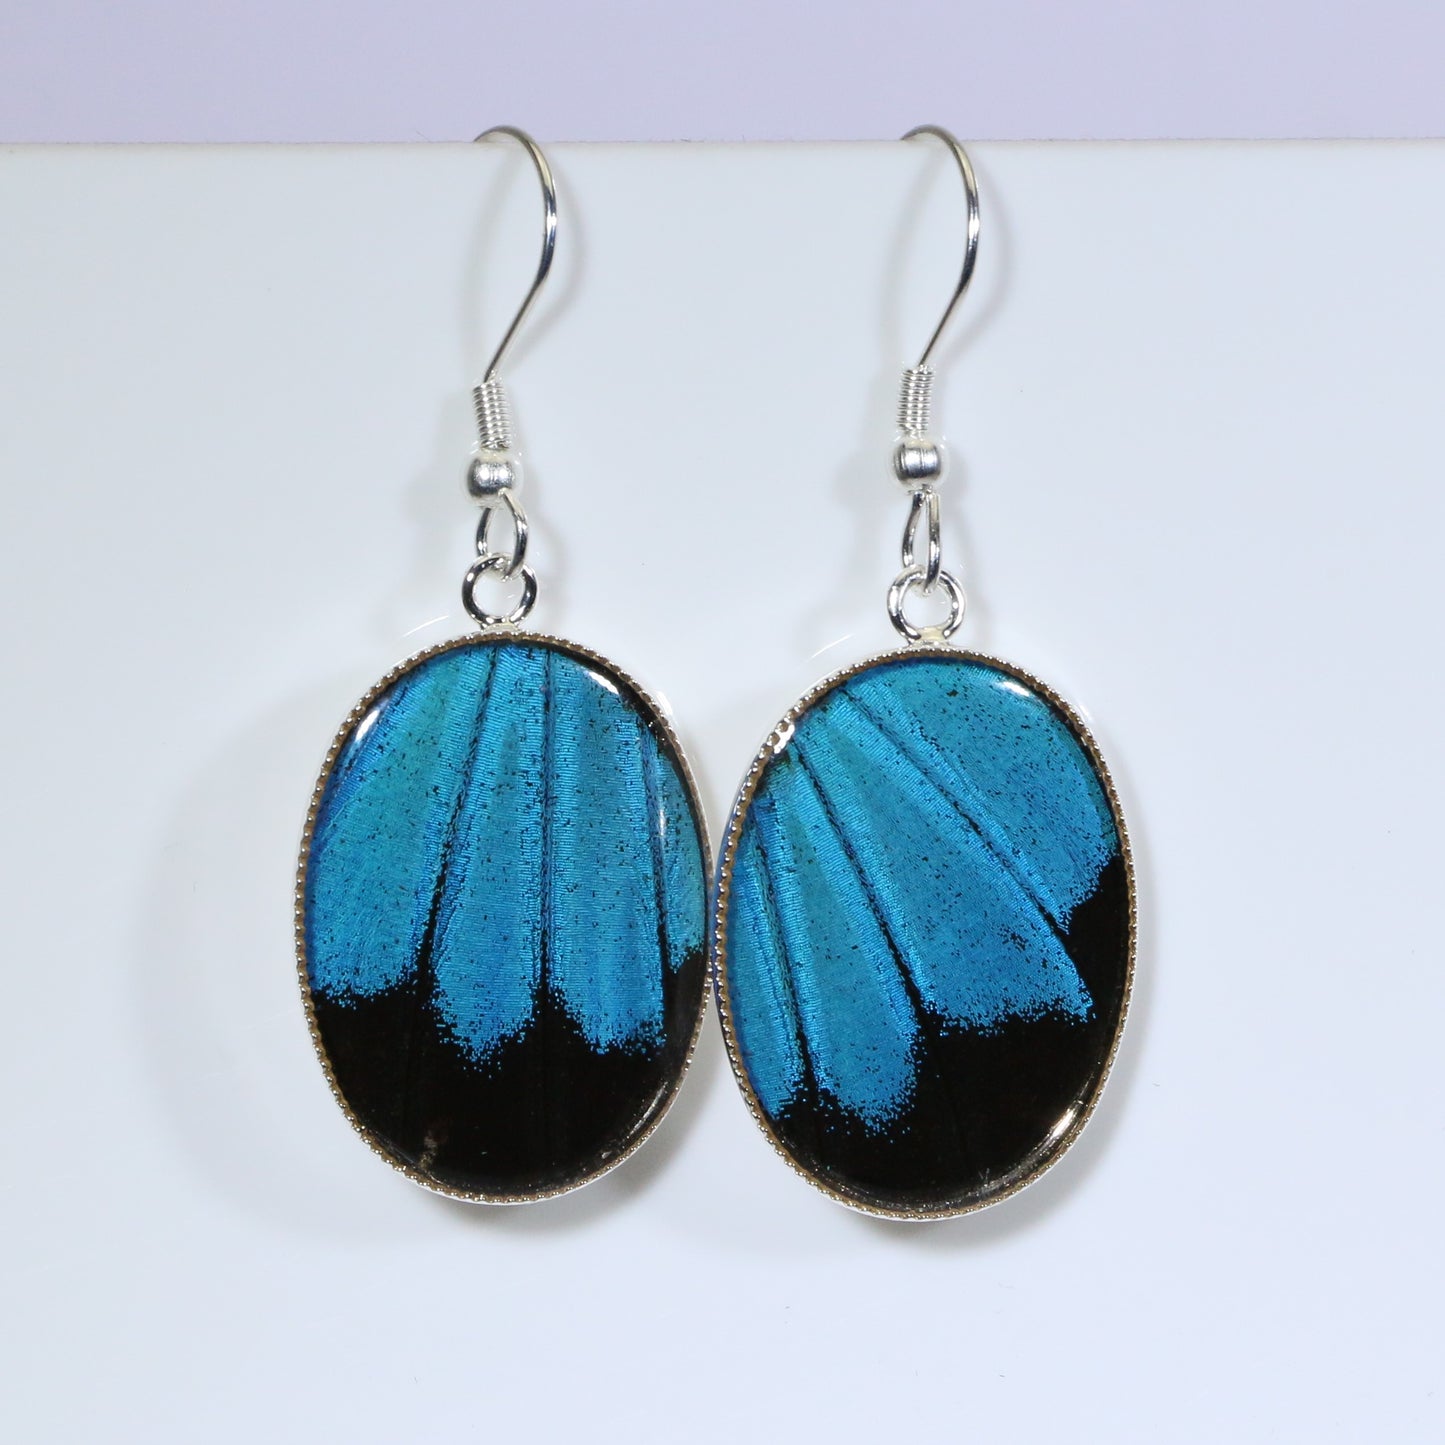 51207 - Real Butterfly Wing Jewelry - Earrings - Medium - Blue Mountain Swallowtail